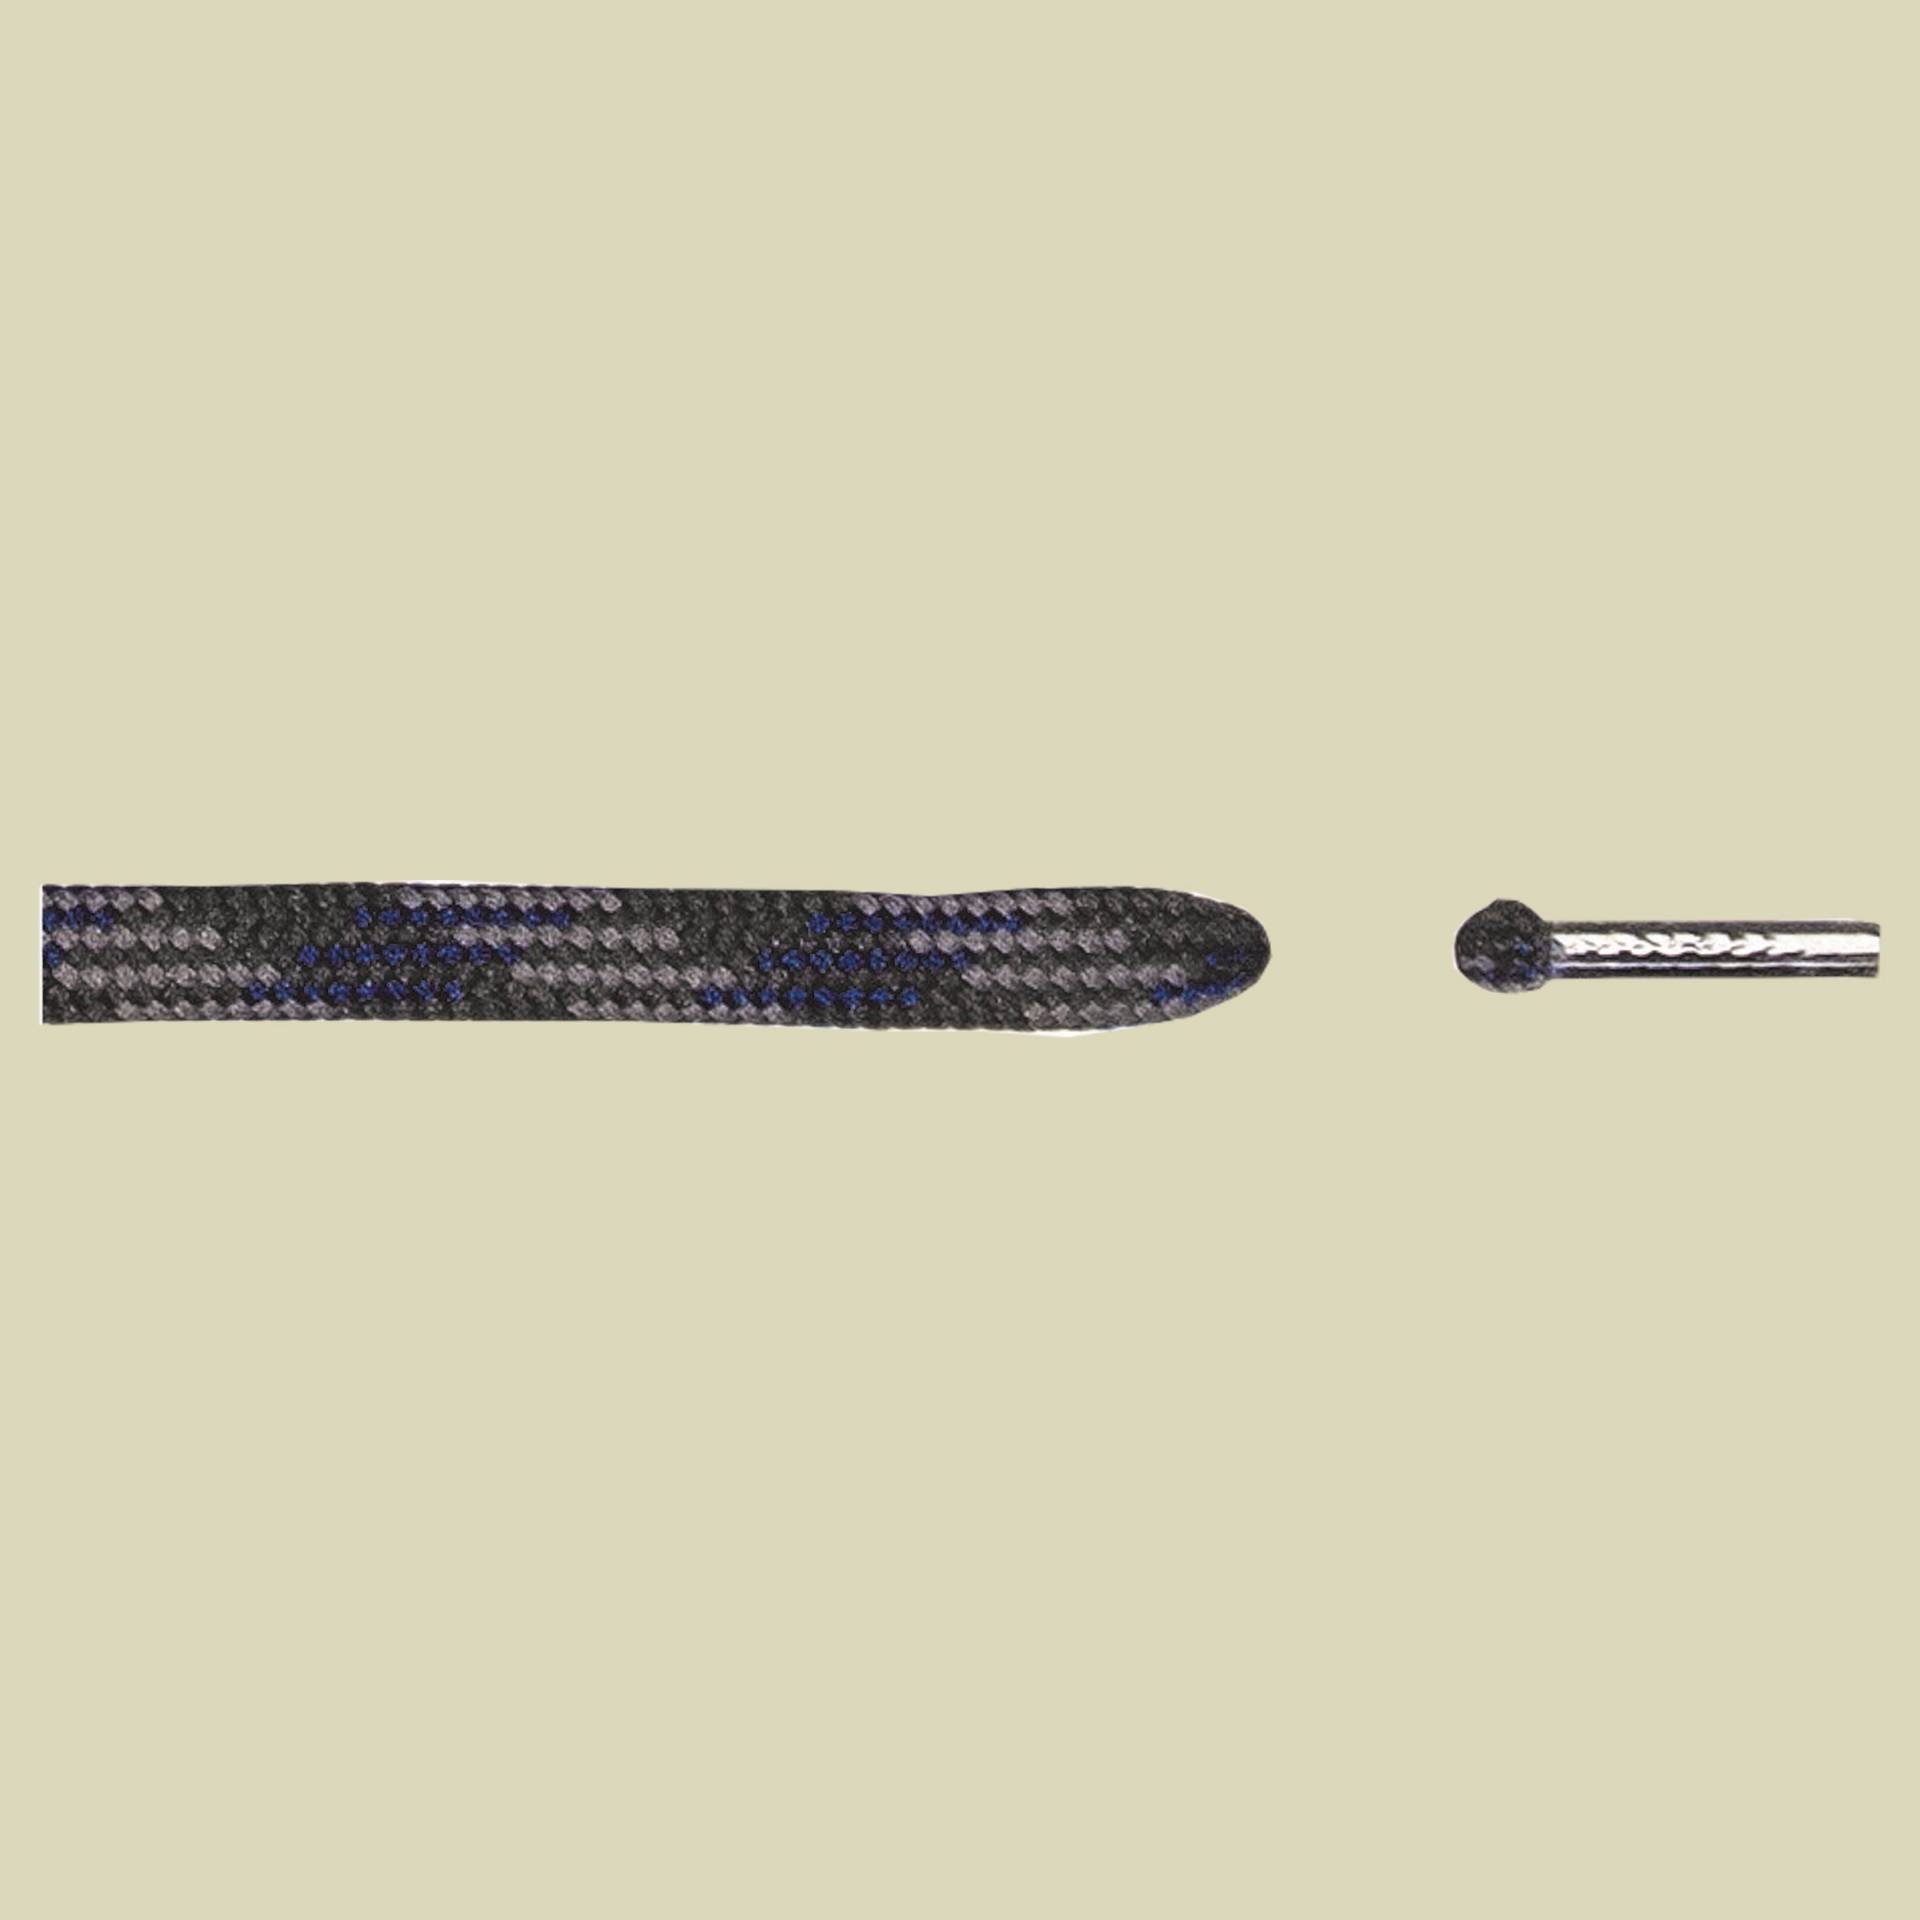 Schuhbandl Bergsport halbrund Länge 120 cm Farbe antrazit/blau 191 von Barth Schuhbandl